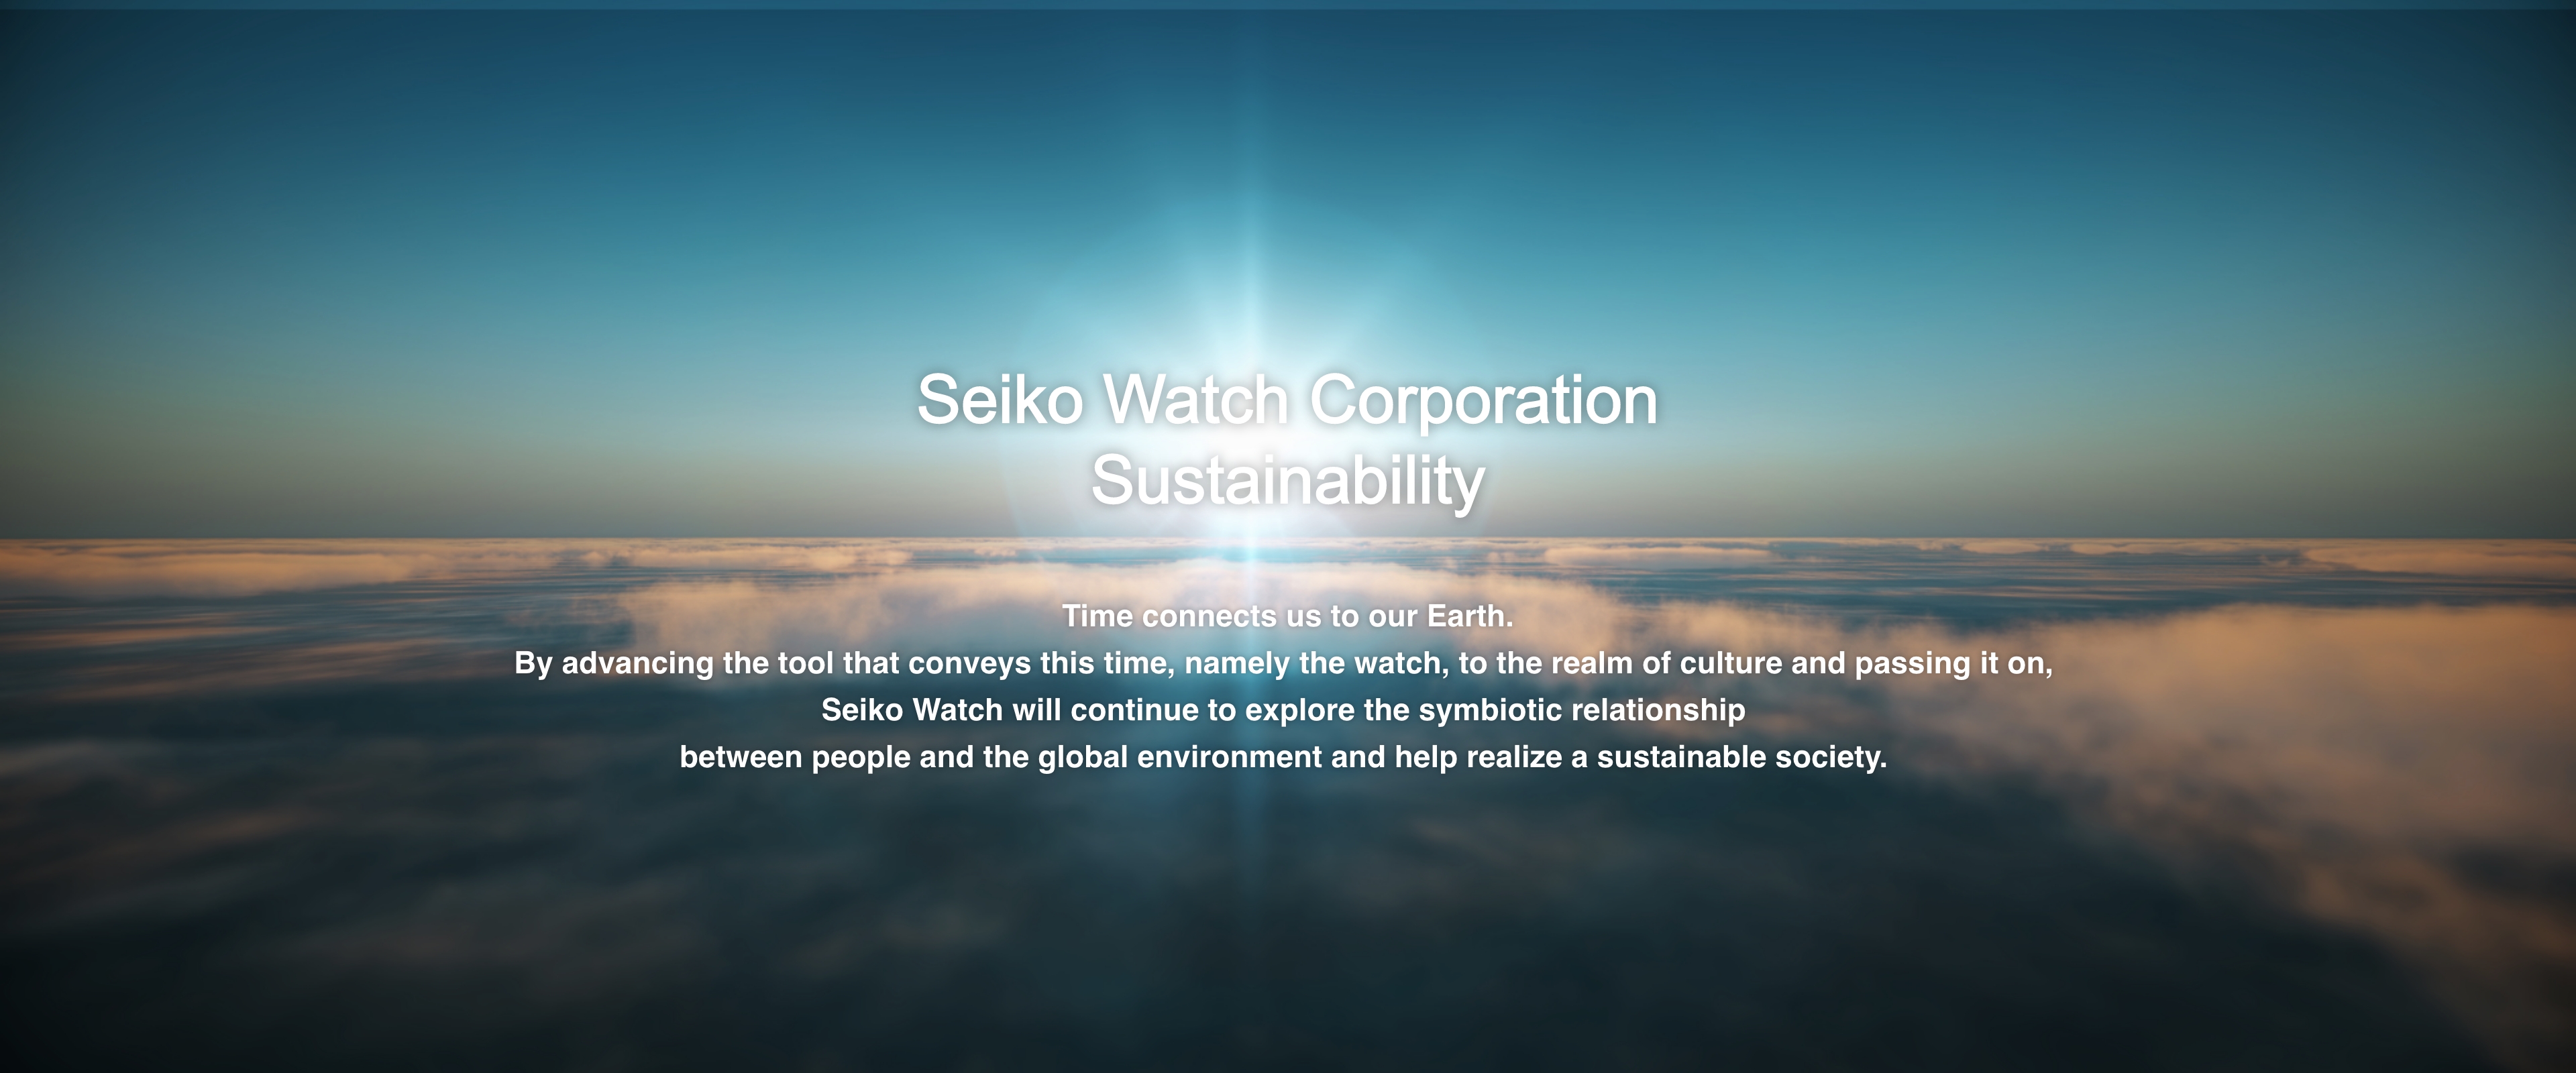 L'impegno per la sostenibilità di Seiko Watch Corporation